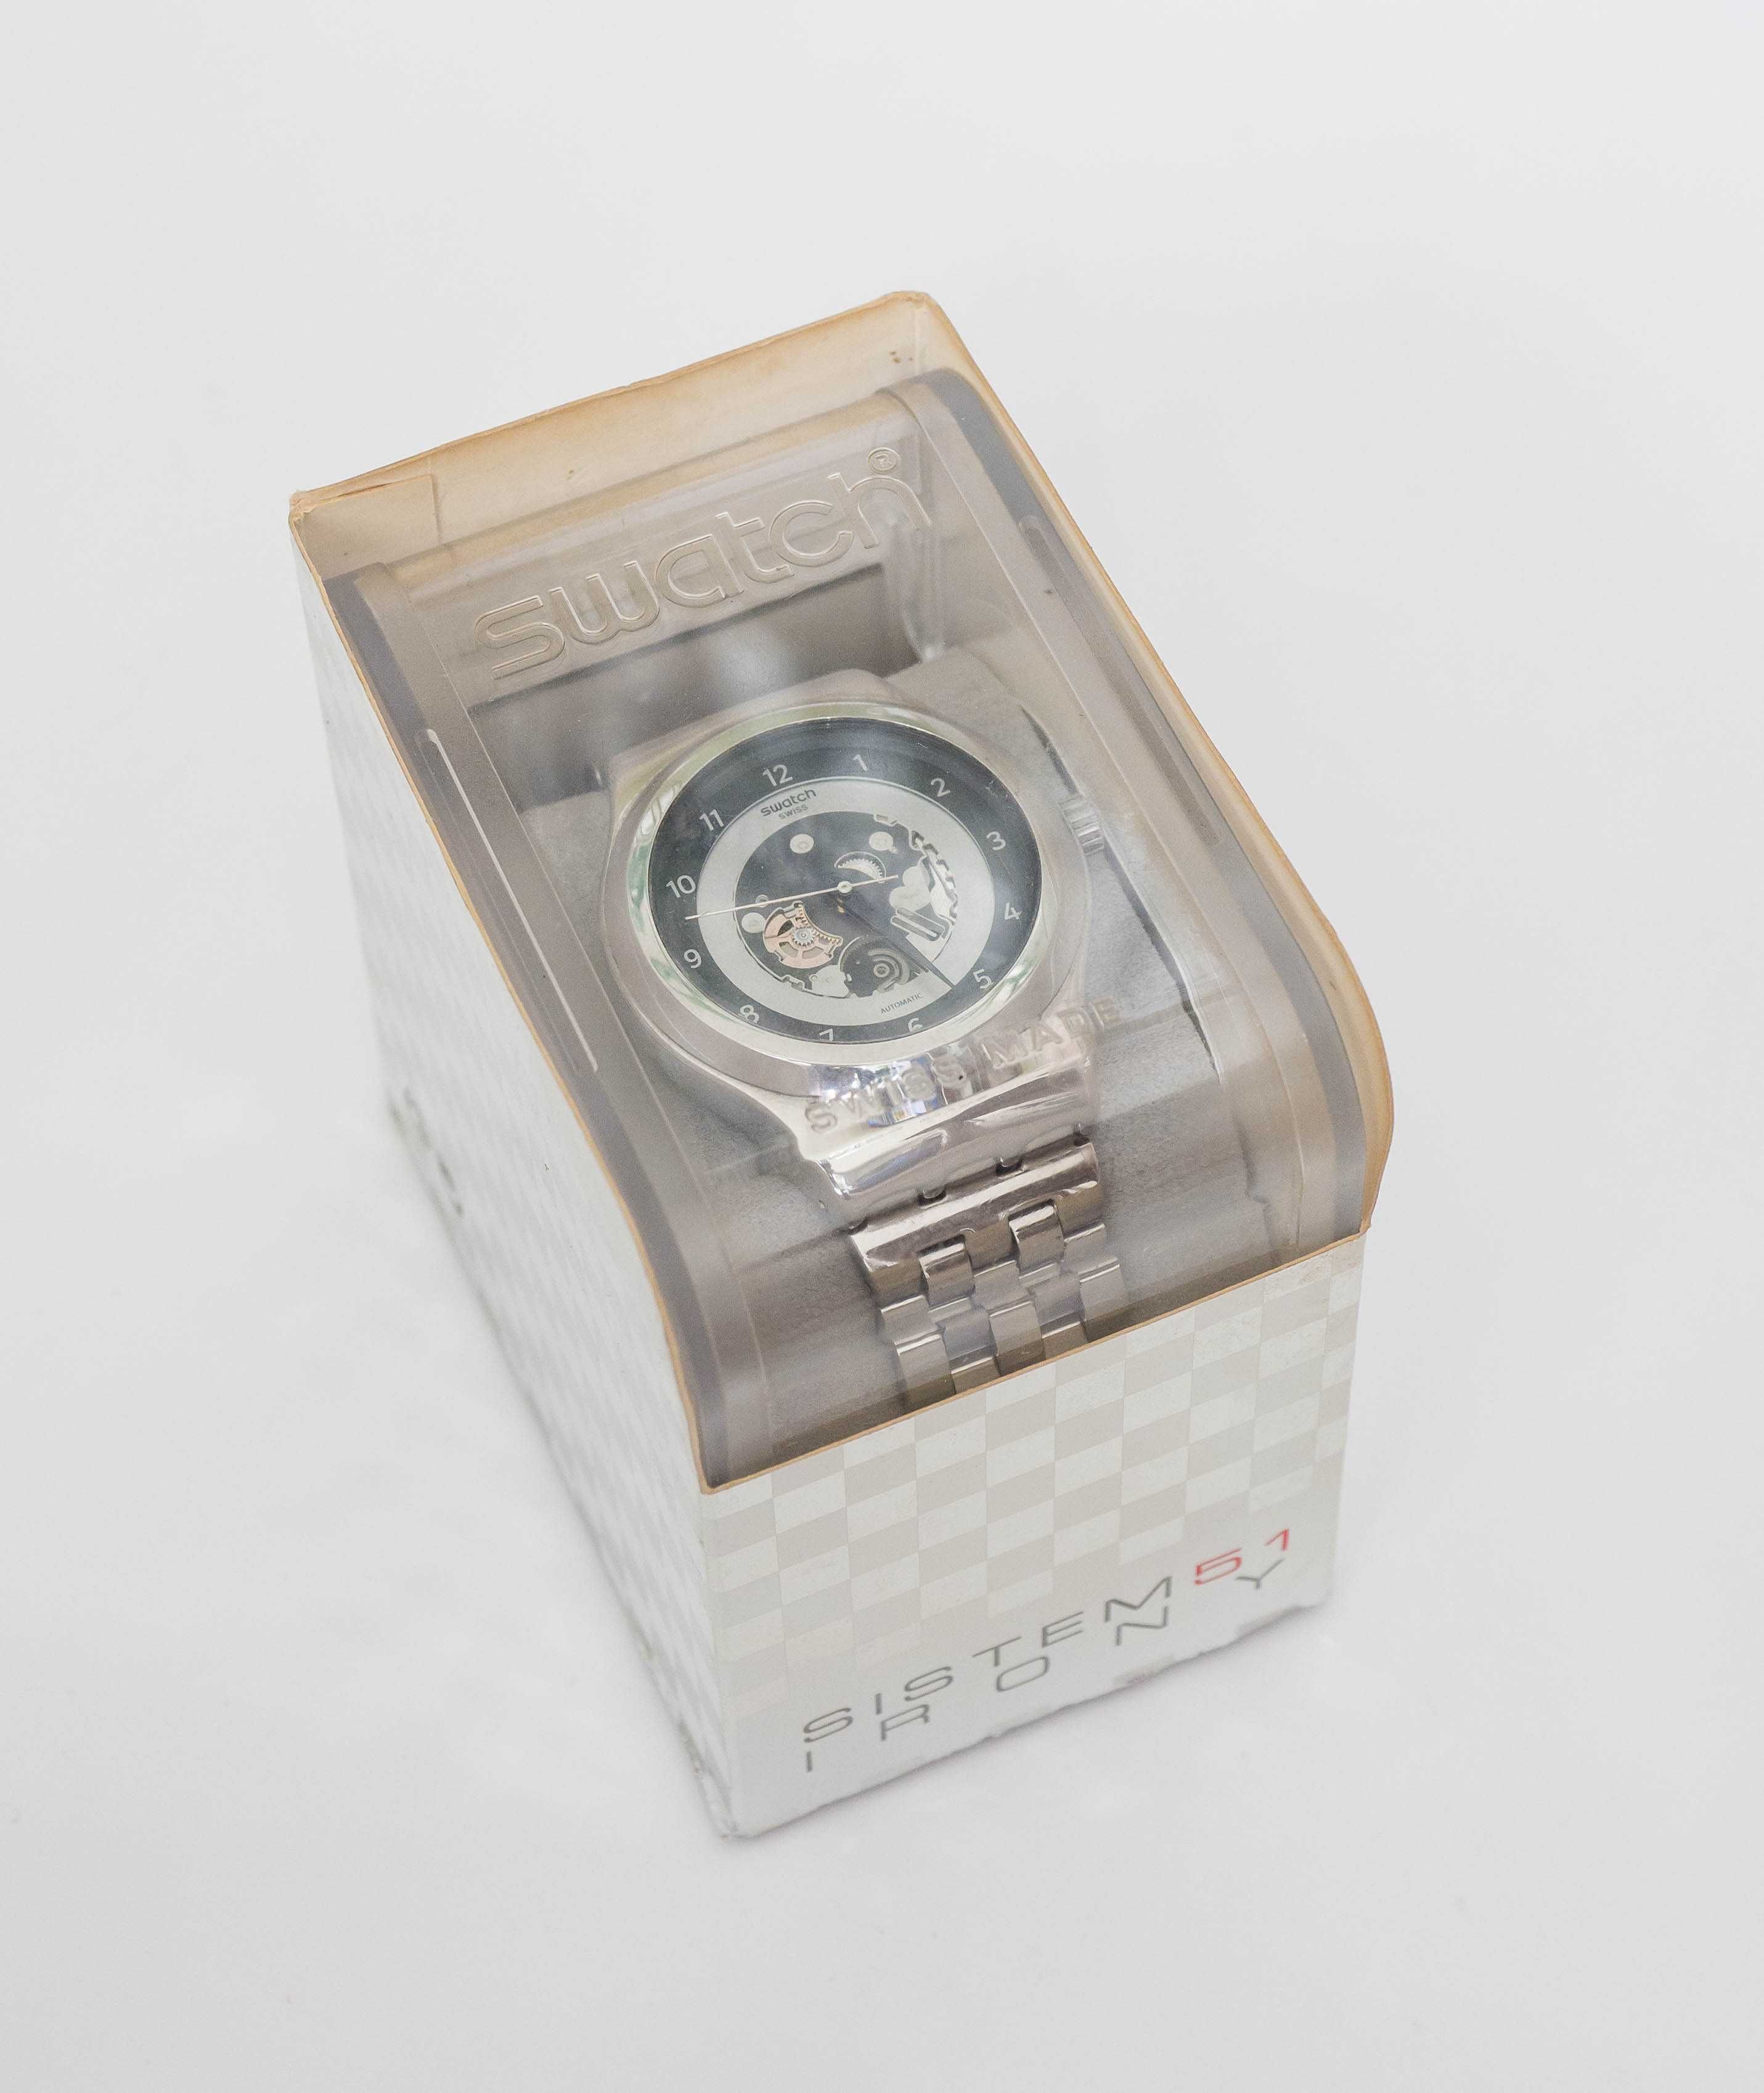 zegarek automatyczny Swatch Sistem51 Irony Lacque (model YIS416G)